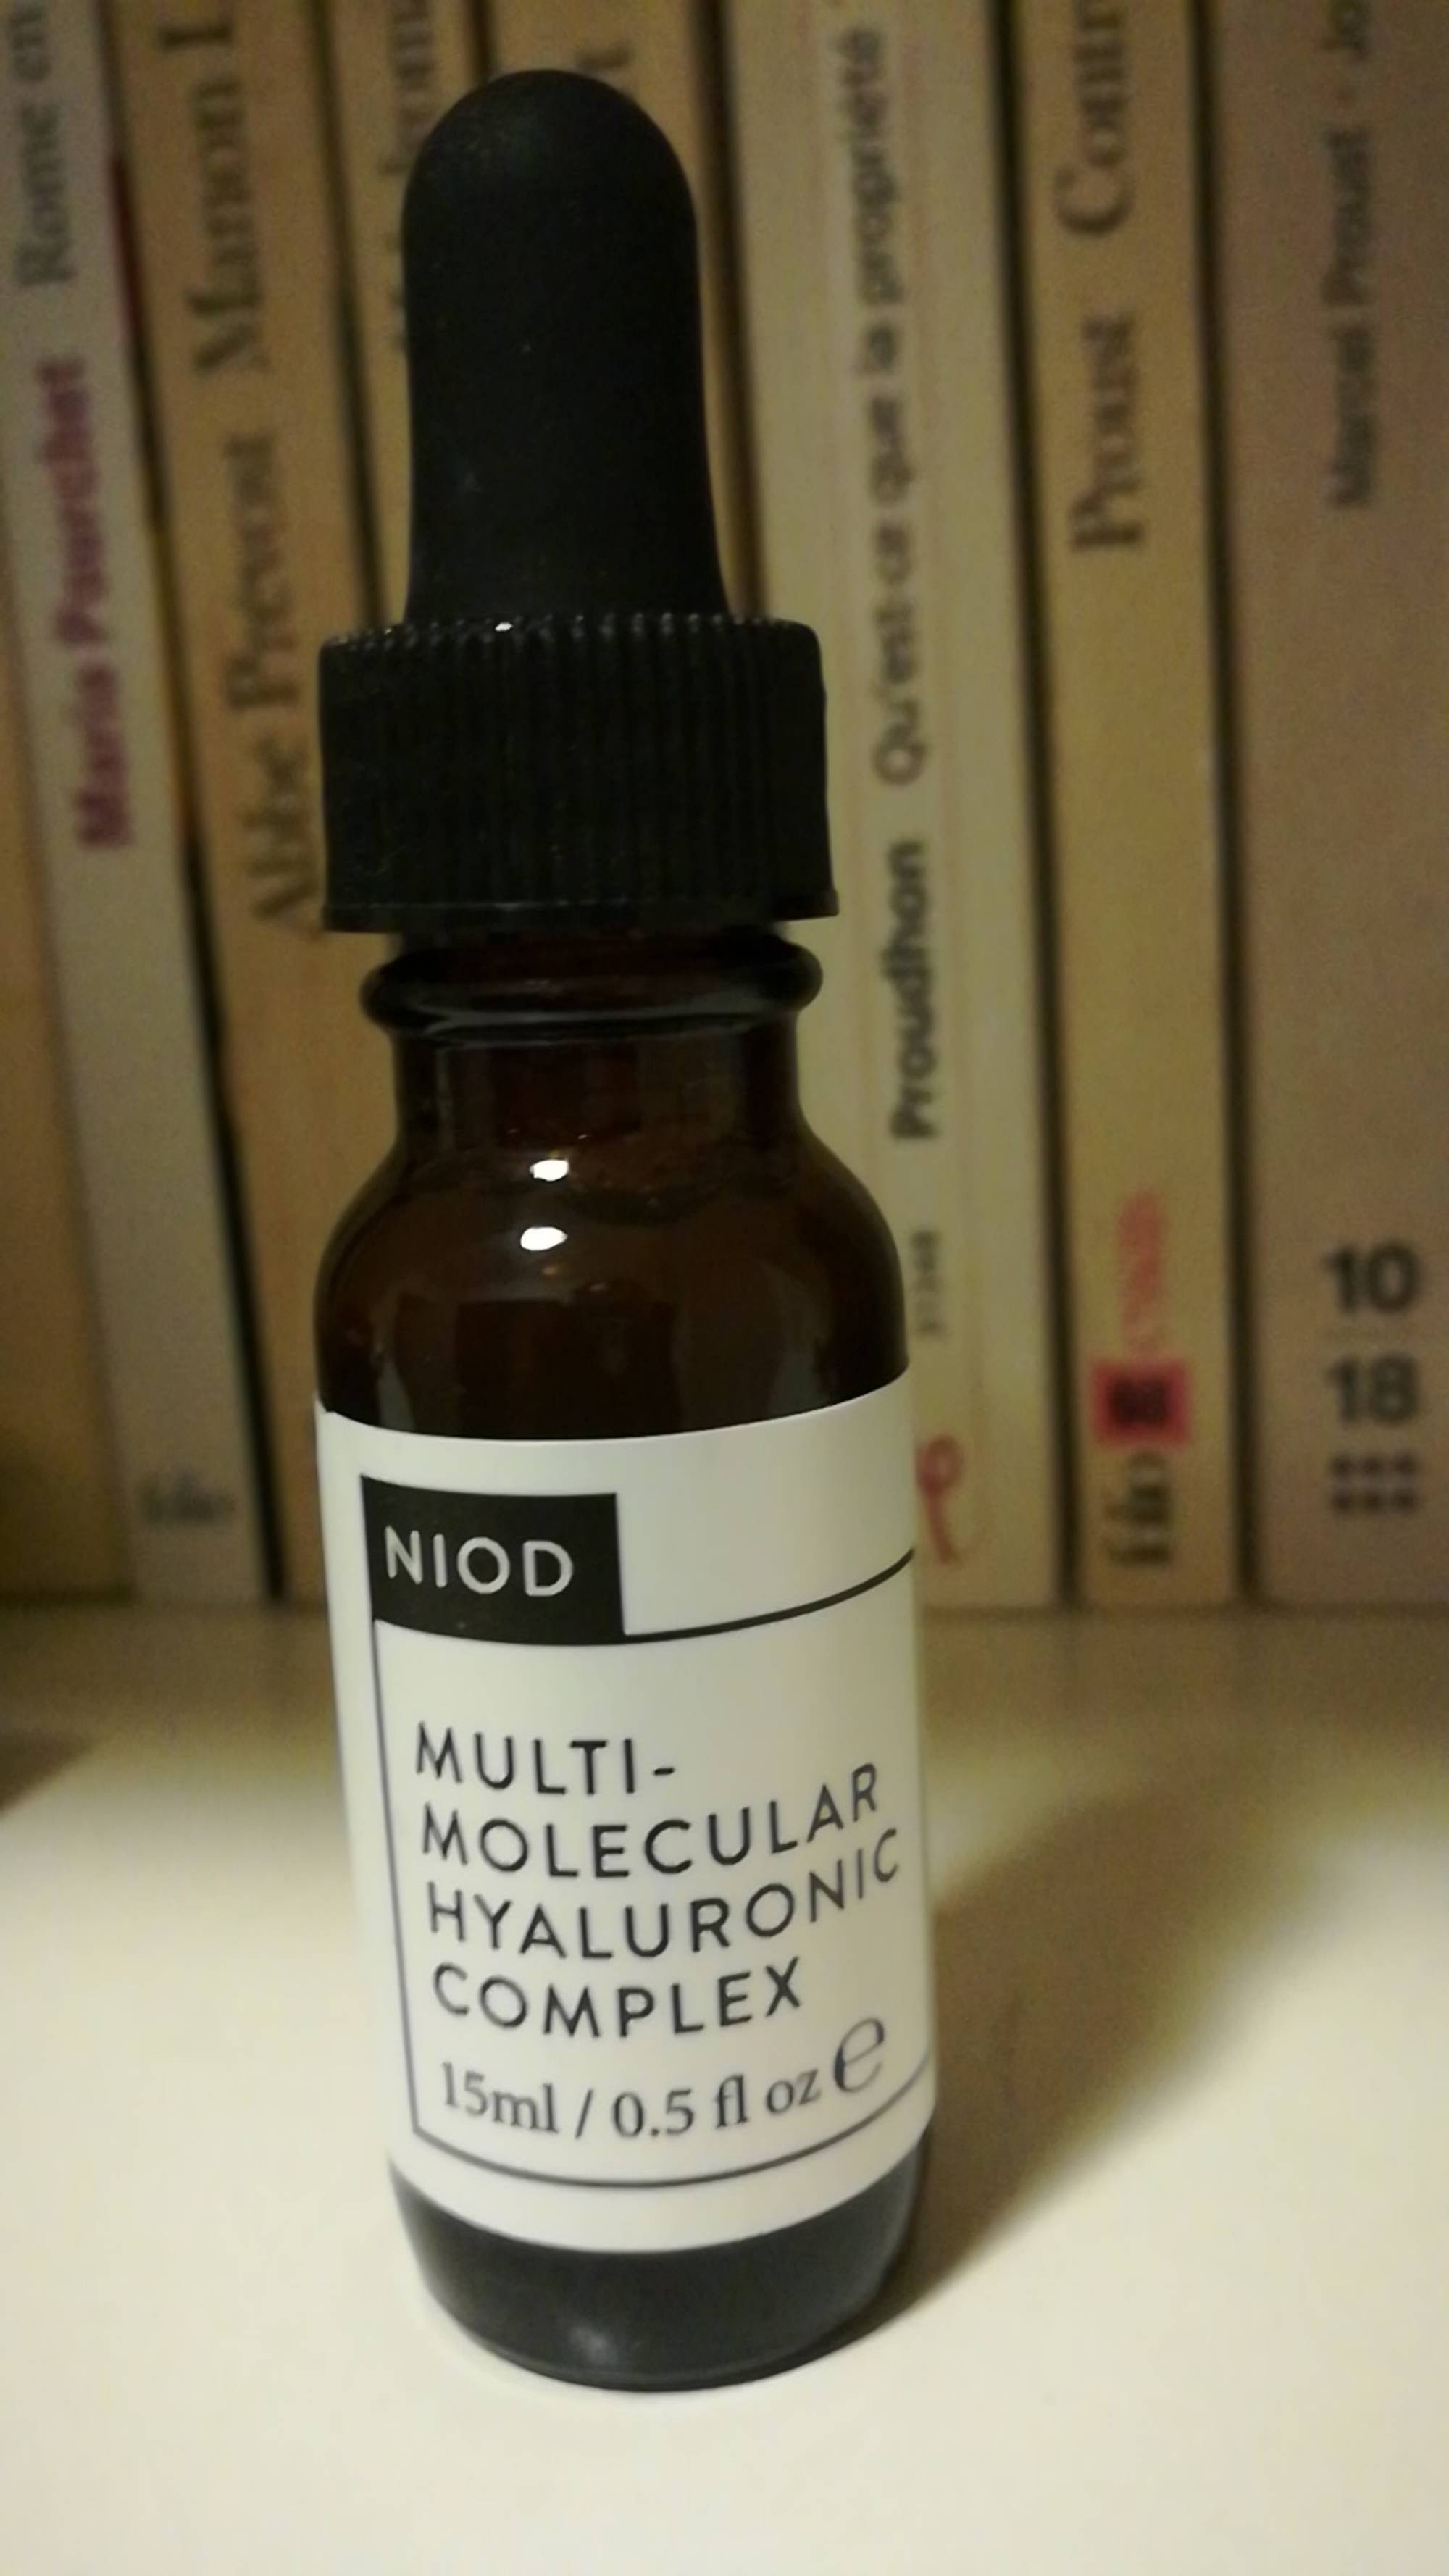 NIOD - Multi-molecular hyaluronic complex